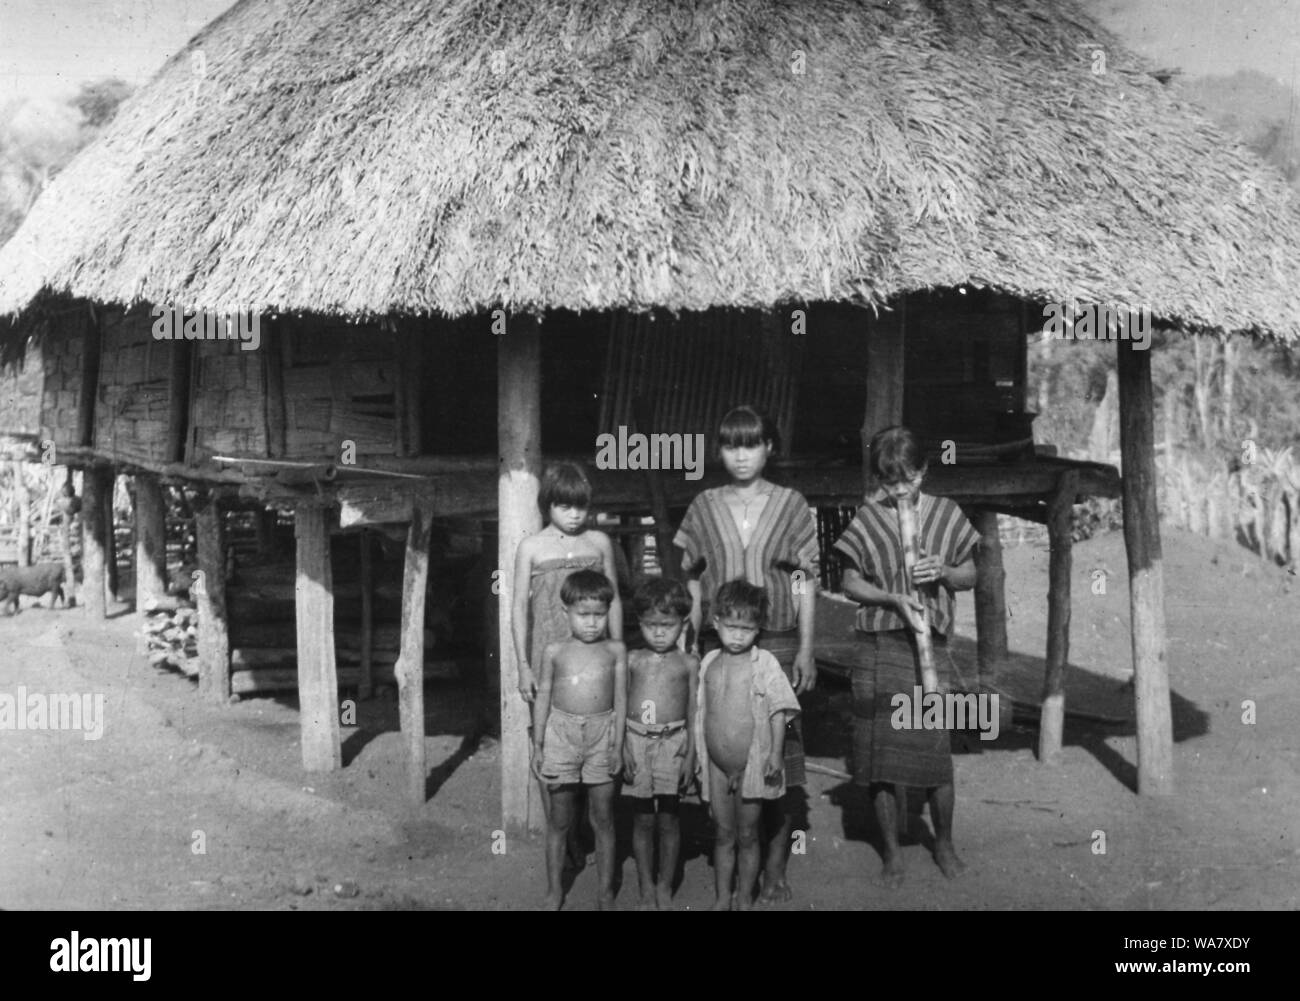 AJAXNETPHOTO. 1953-1957 (circa). INDO CINA. Il Vietnam. (IN POSIZIONE paese sconosciuto.) - ragazze, uno di fumare un bambù tradizionale tubo di acqua, e i ragazzi pongono per la fotocamera al di fuori del tetto di paglia HOUSE (HOOCH) su palafitte. foto:JEAN CORRÈZE/AJAXREF:RX7 191508 243 Foto Stock